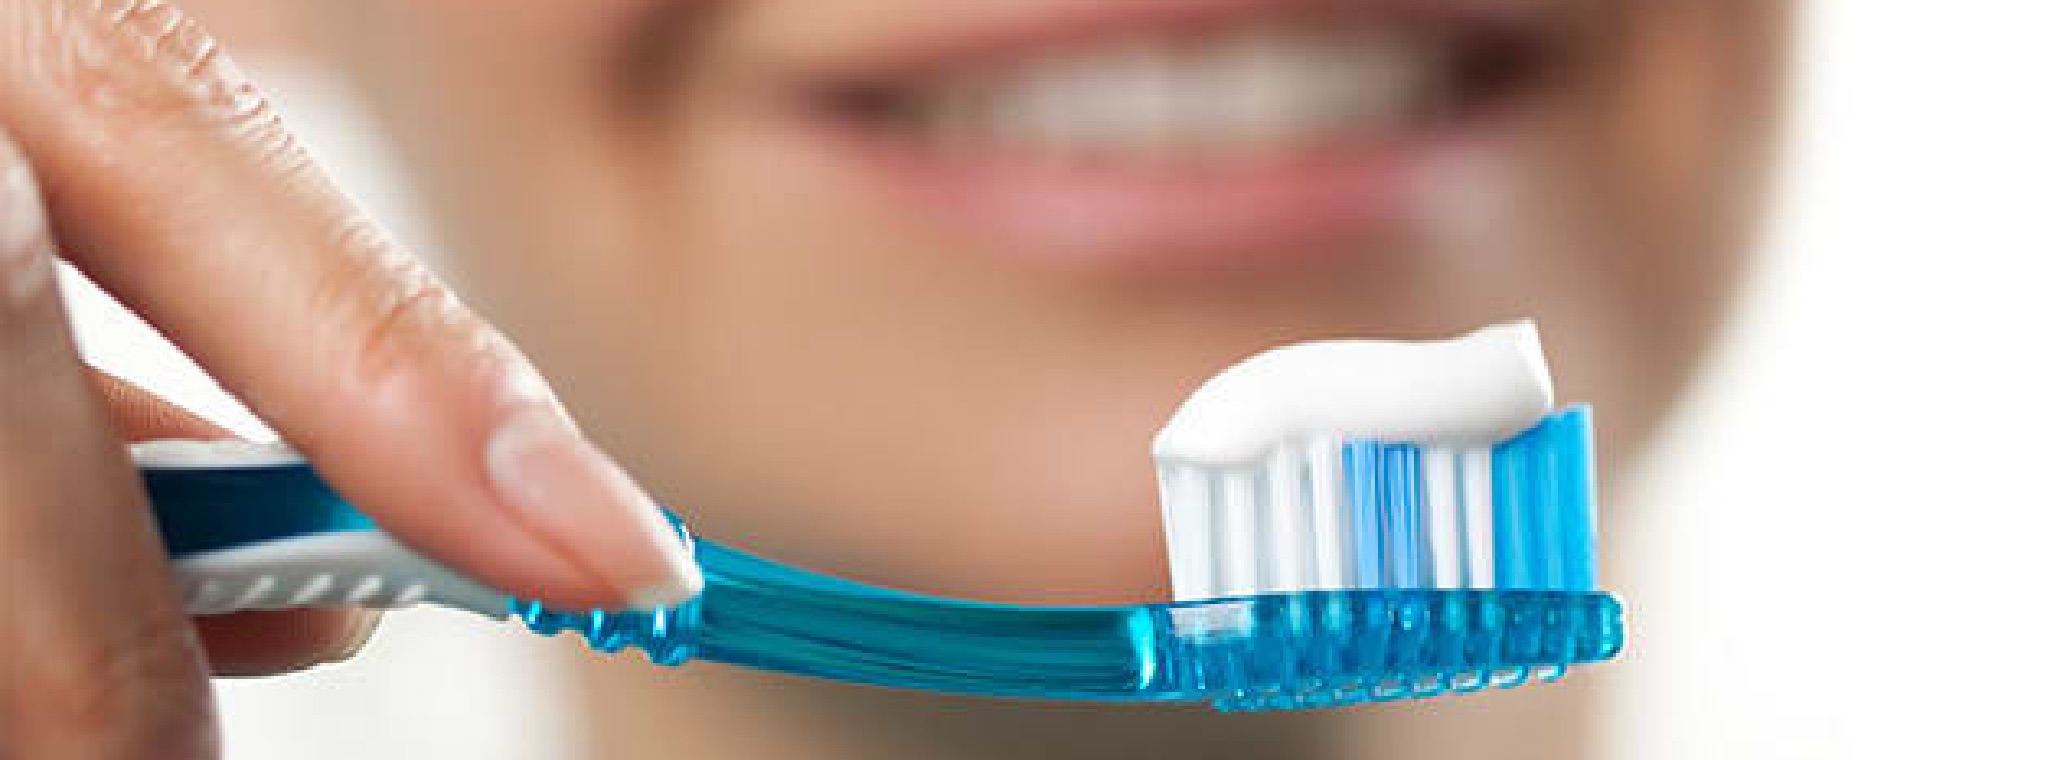 Titanium Dioxide in Toothpaste